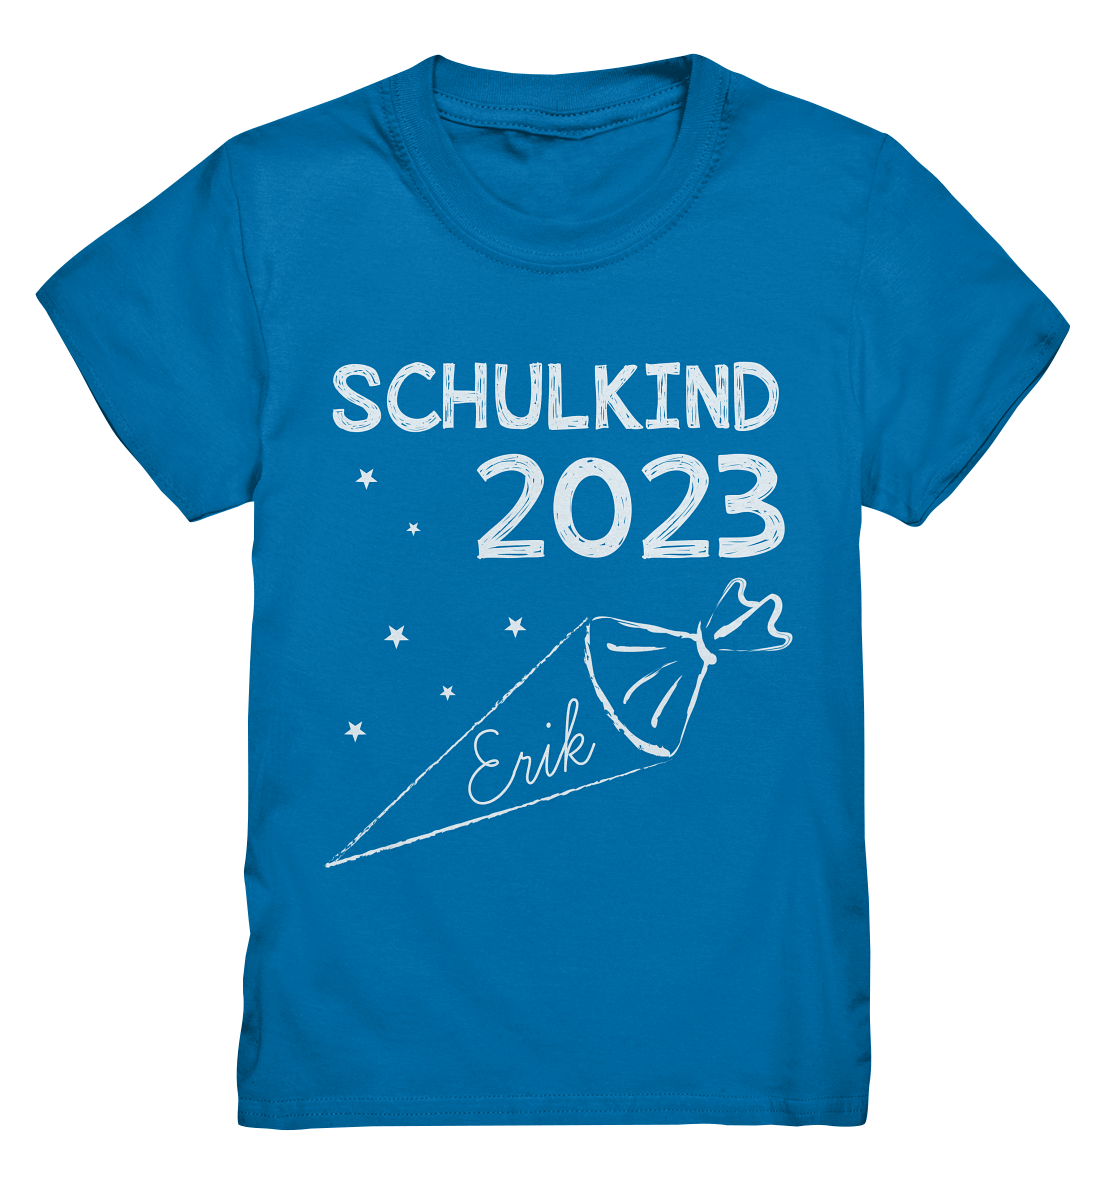 Schulkind 2023 Schultüte - personalisiertes Kindershirt